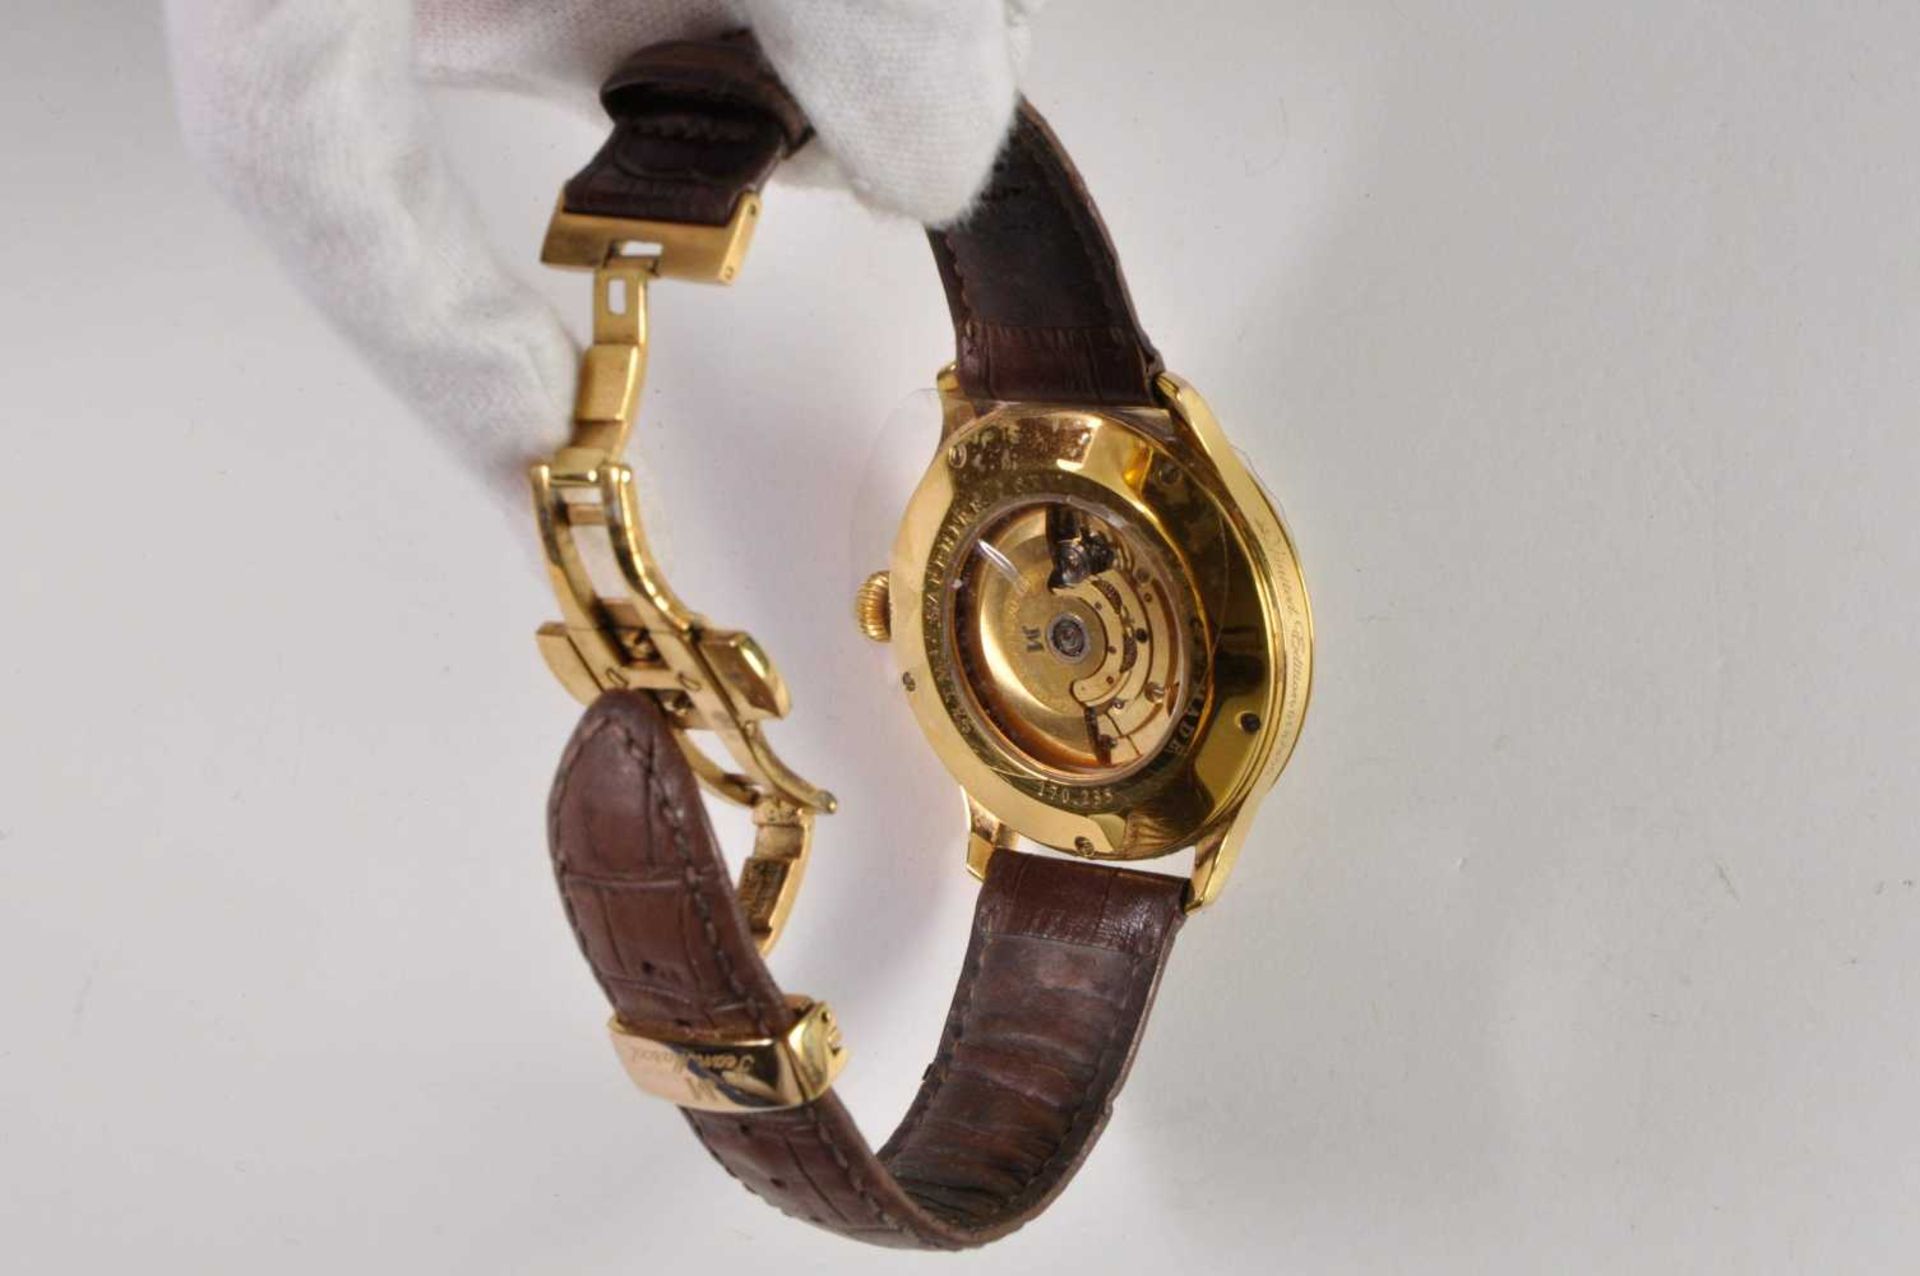 Jean Marcel Semper Herren Armbanduhr. Ca. 43mm, Edelstahl, Automatik, Saphirglas. Braun/weißes Ziffe - Bild 3 aus 5